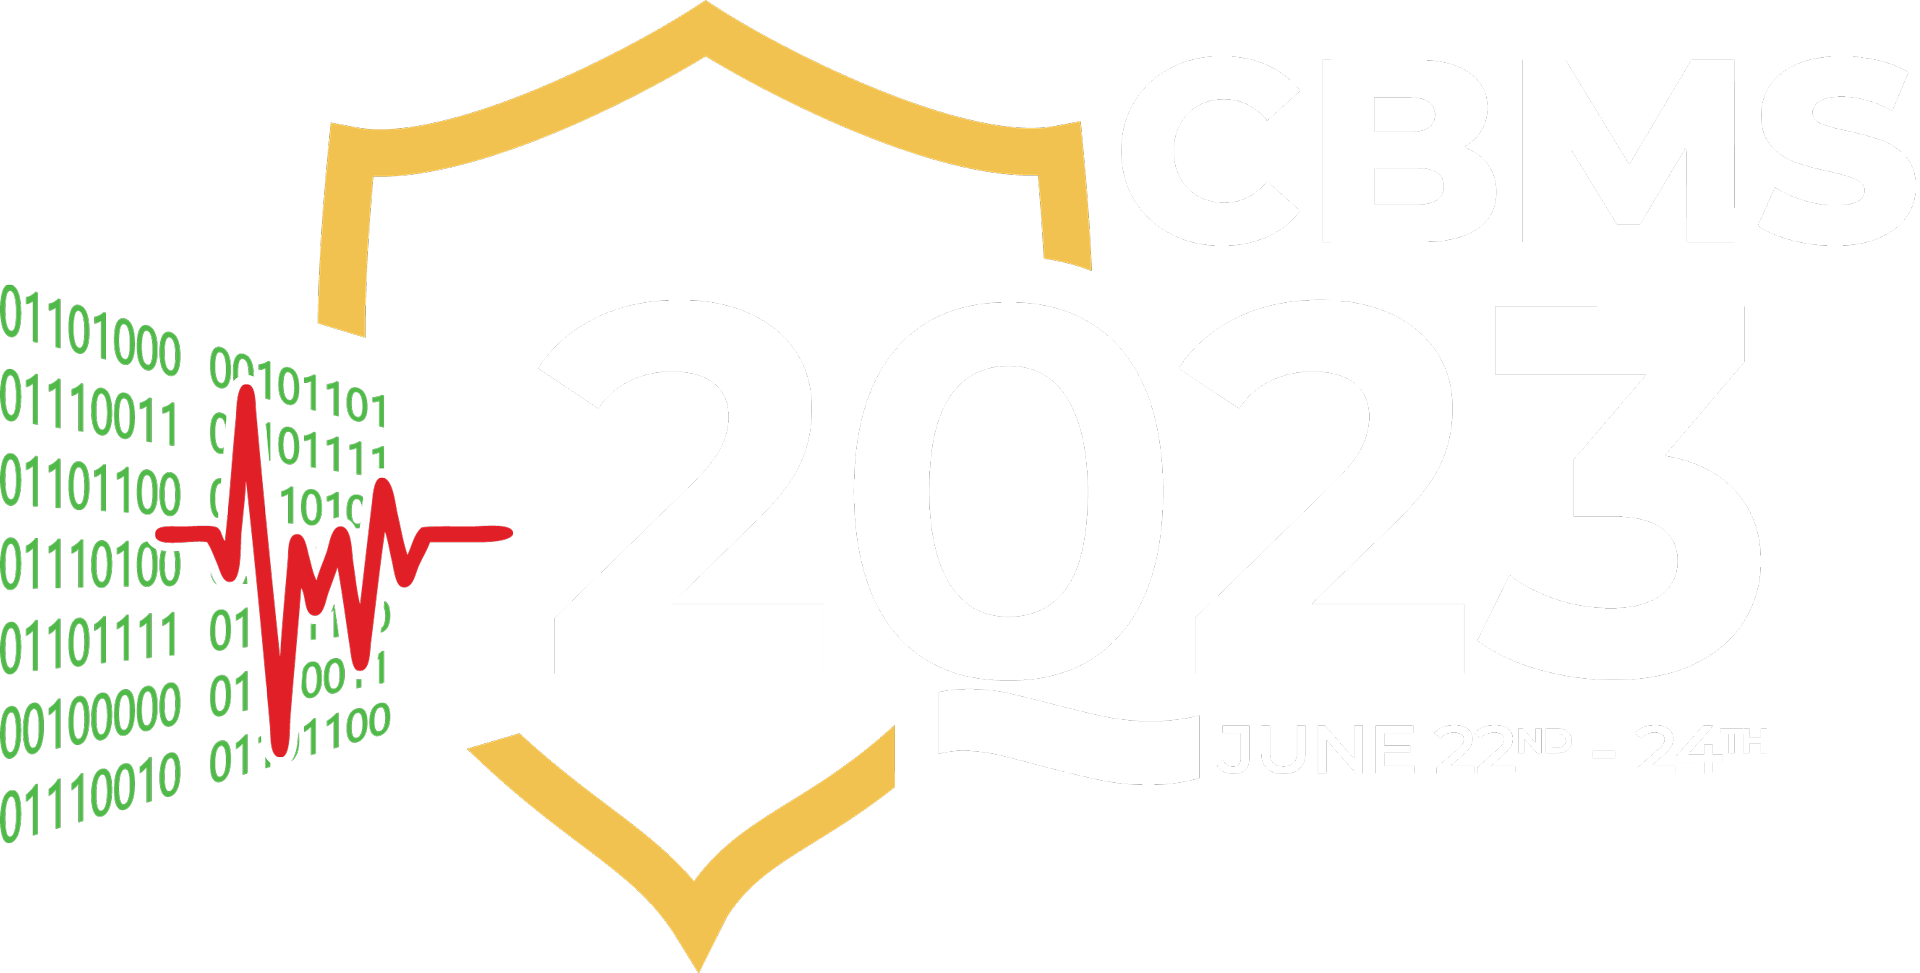 IEEE CBMS 2023